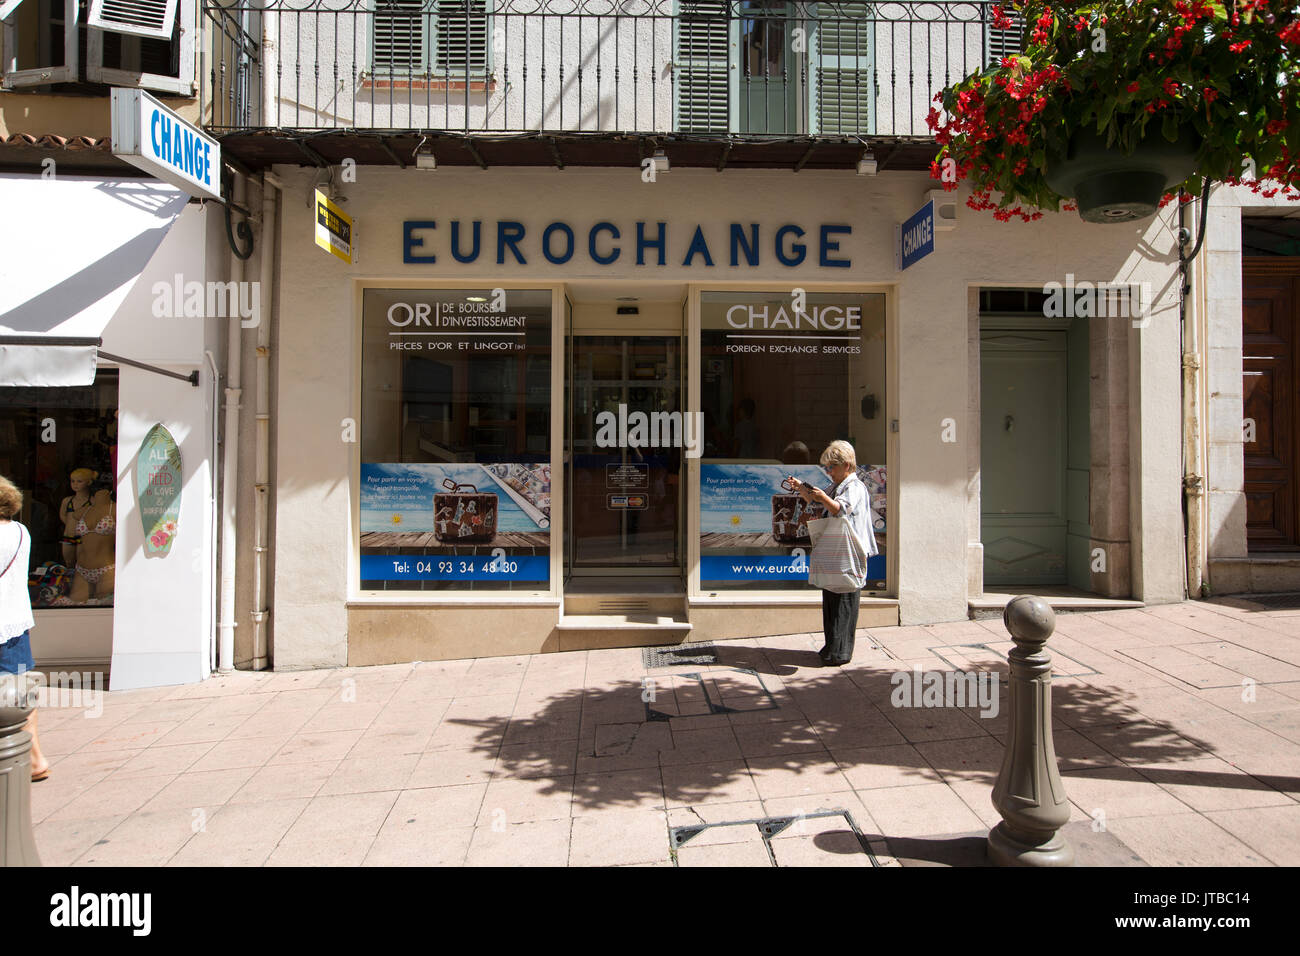 EUROCHANGE foreign exchange il ramo di Antibes, in località mediterranea città situata tra Cannes e Nizza sulla Costa Azzurra, Provence-Alpes-Côte d'Azur Foto Stock